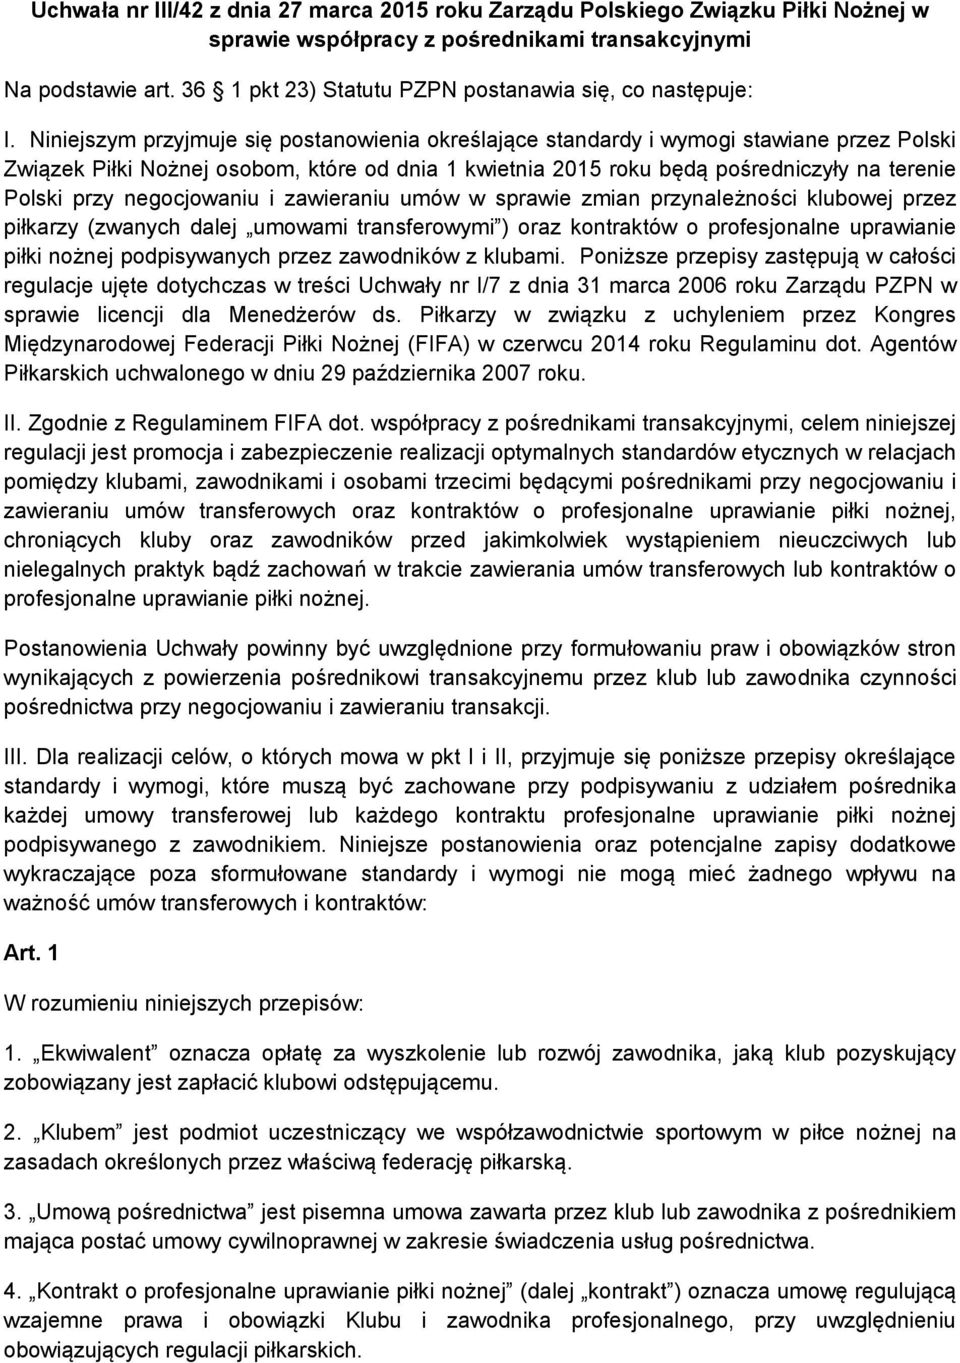 Niniejszym przyjmuje się postanowienia określające standardy i wymogi stawiane przez Polski Związek Piłki Nożnej osobom, które od dnia 1 kwietnia 2015 roku będą pośredniczyły na terenie Polski przy